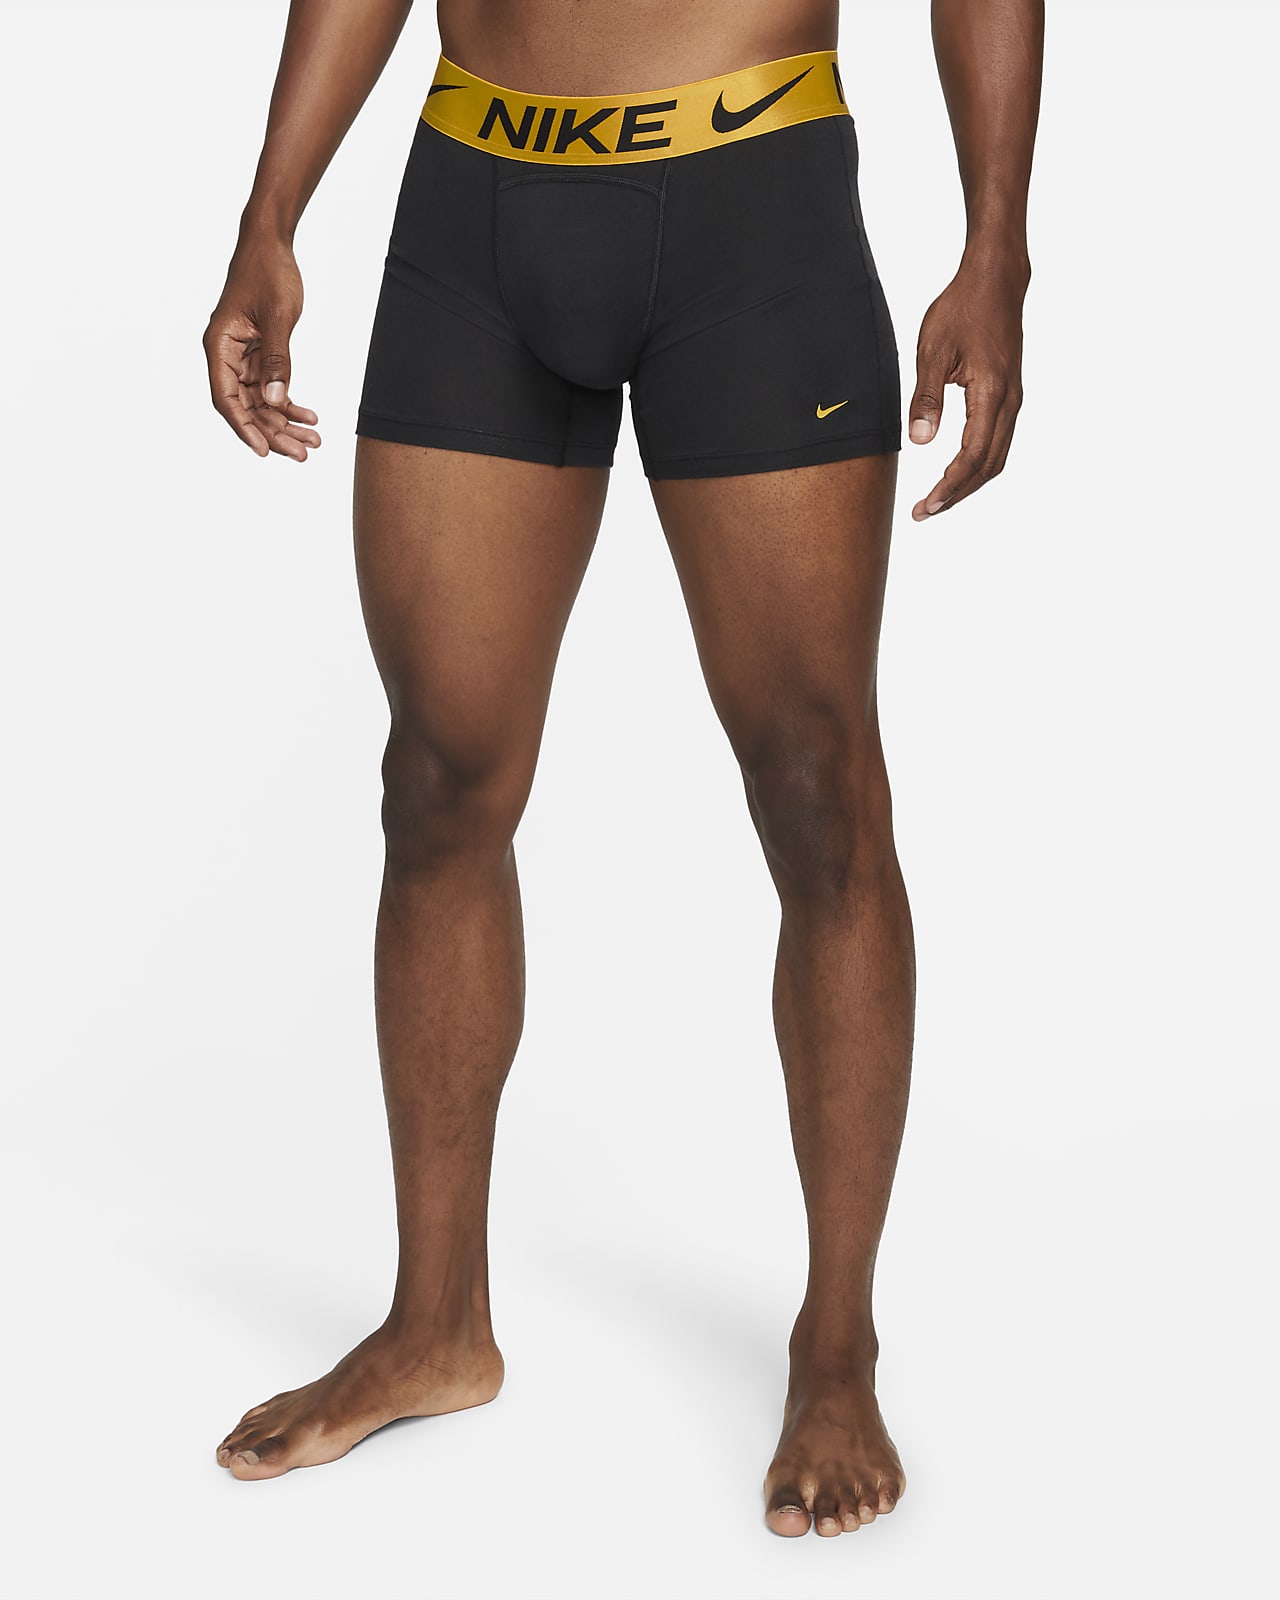 Nike Luxe Cotton Modal Men's Boxer Briefs